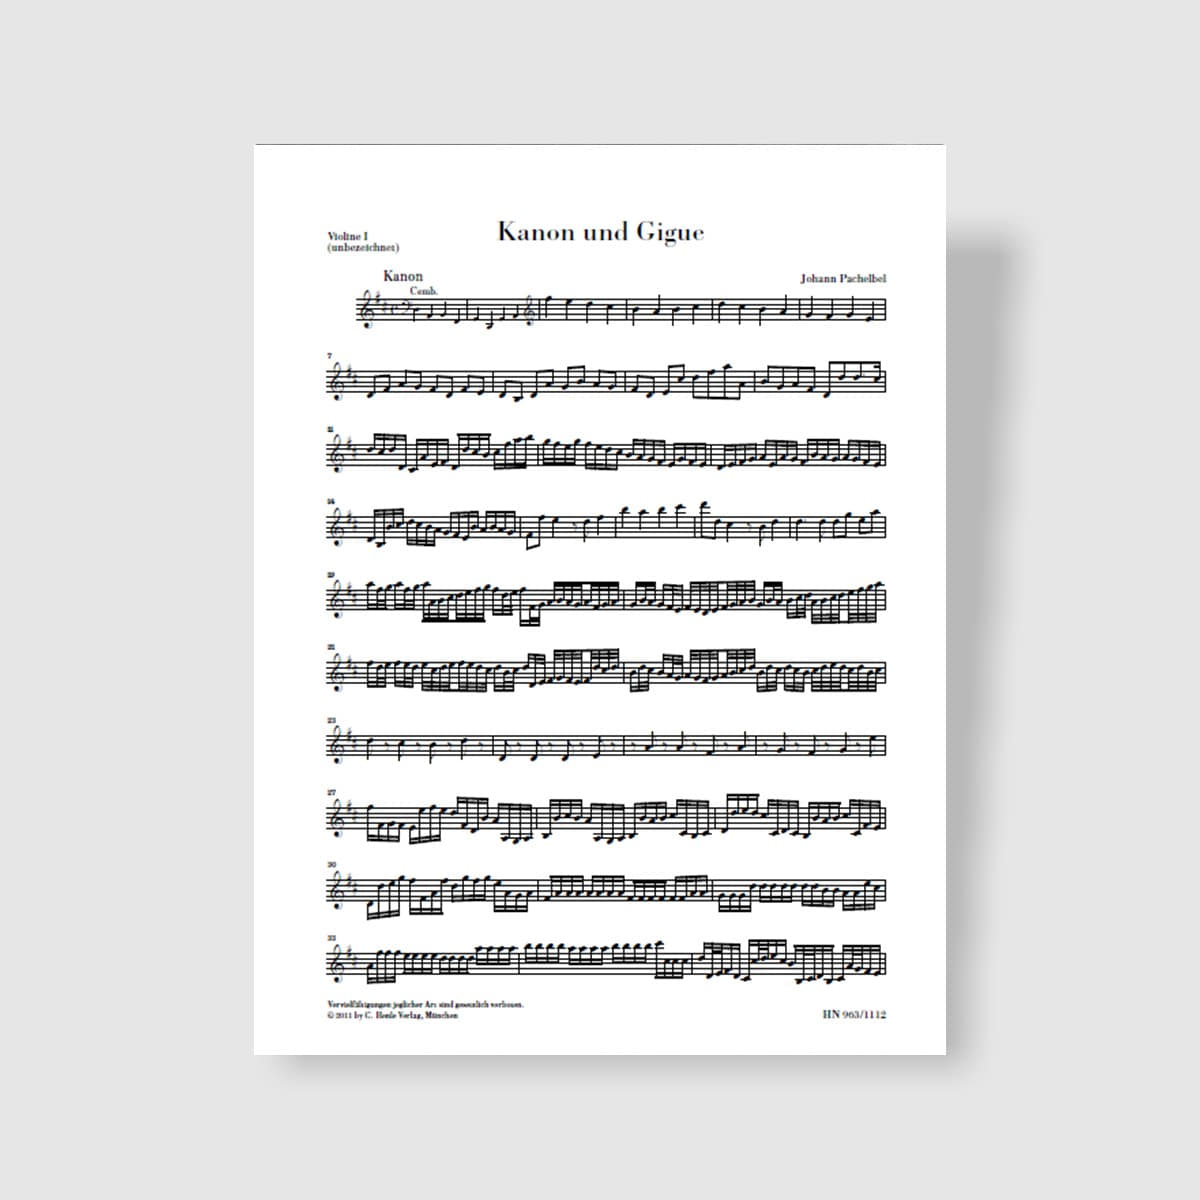 파헬벨 3개의 바이올린과 바소 콘티누오를 위한 캐논과 무곡 in D Major